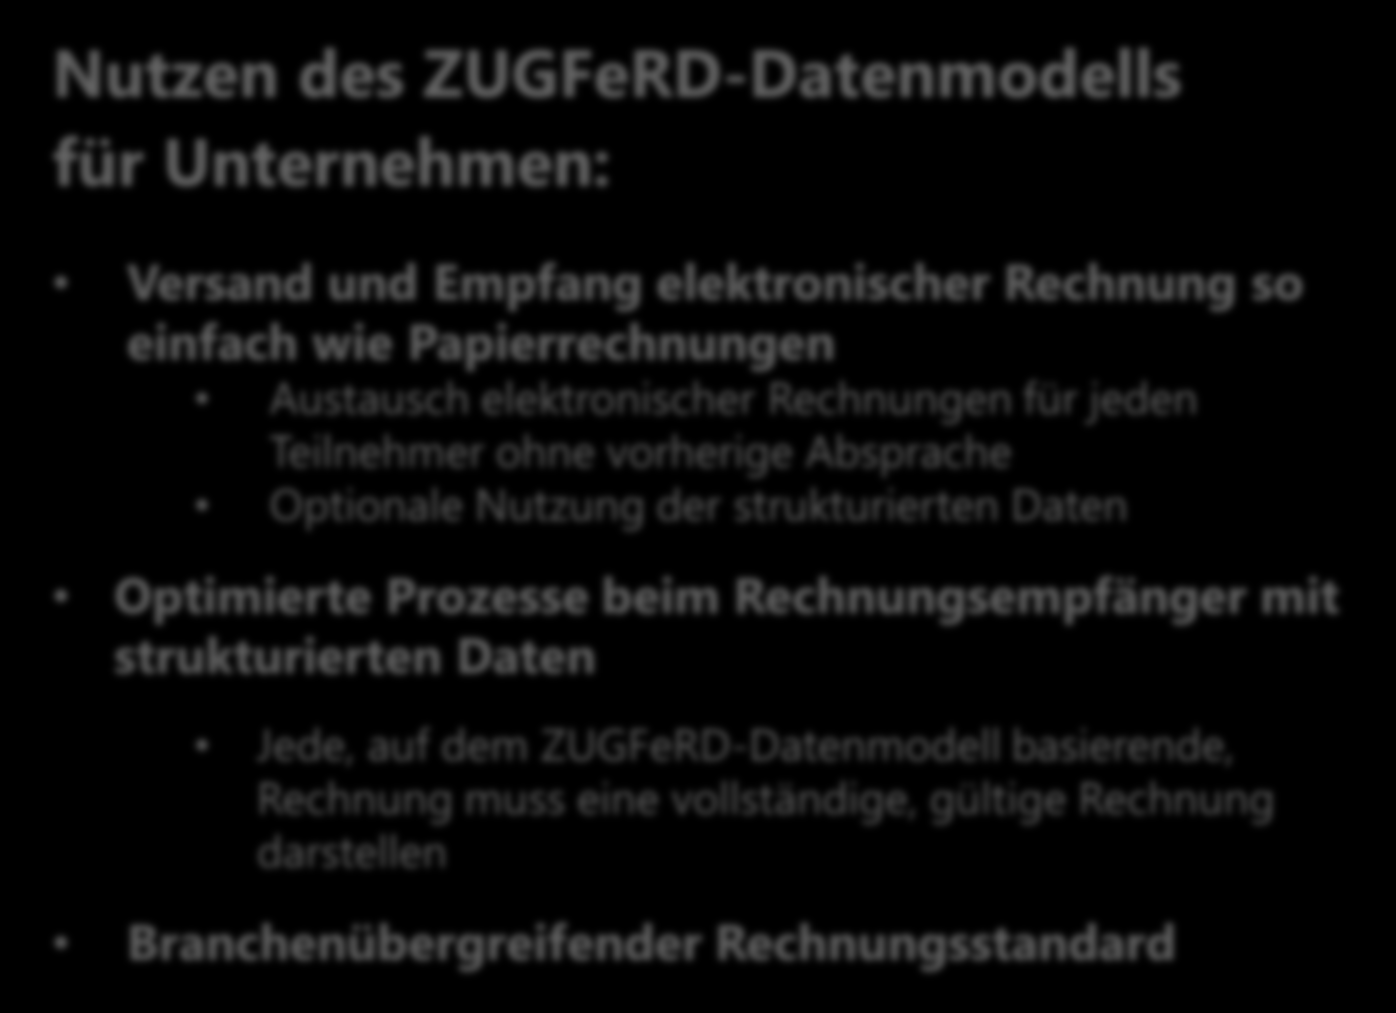 ZUGFeRD Grundlagen ZUGFeRD ZUGFeRD Zentrale User Guide des Forums elektronische Rechnung Deutschland (XML-) Rechnungsdaten einheitliches Rechnungsdatenformat Nutzen des ZUGFeRD-Datenmodells für